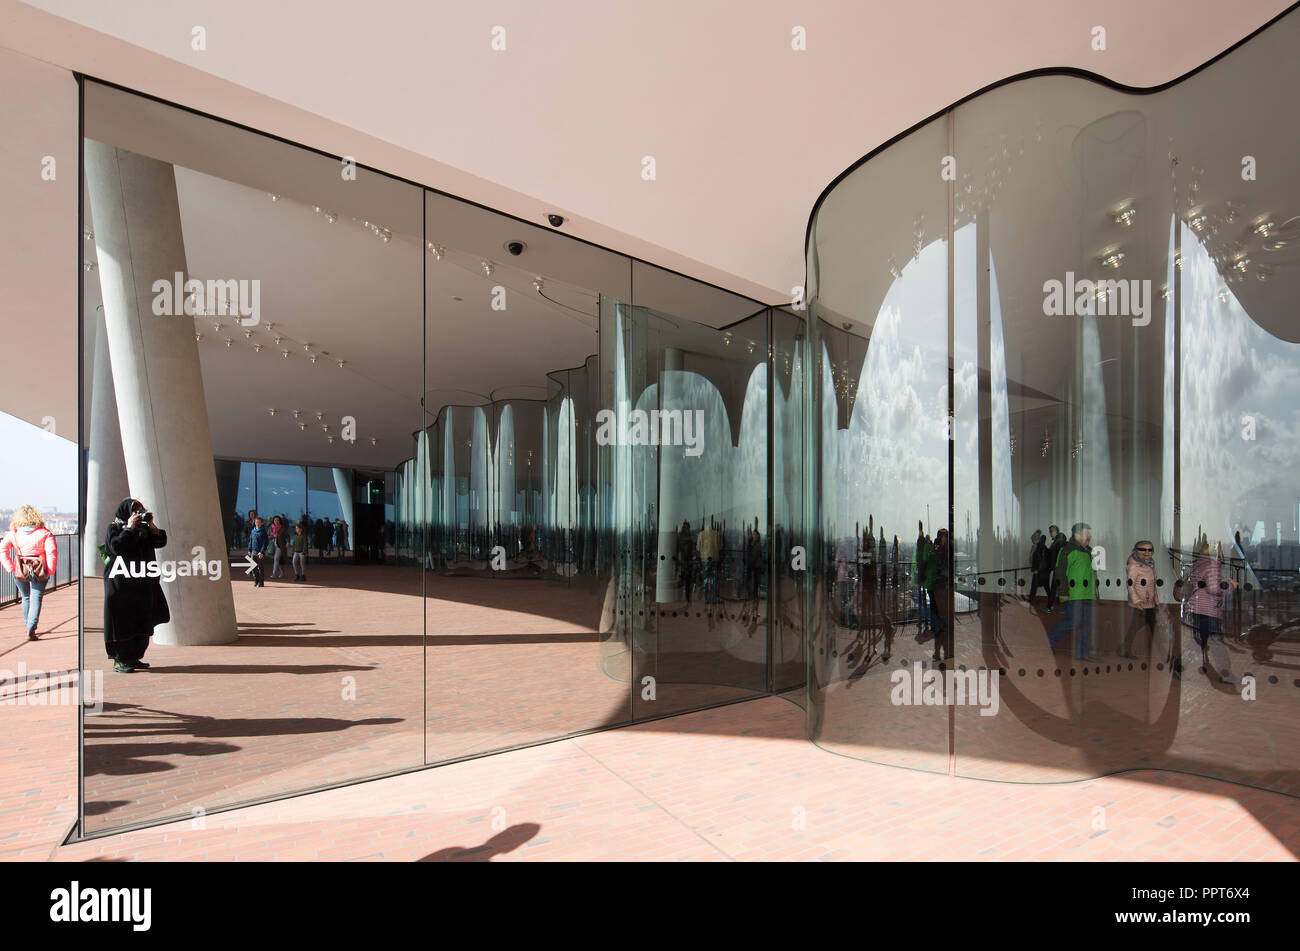 Hamburgo, la Elbphilharmonie, Wandelhalle genannt Plaza, wellenförmige Glaswand zur Trennung der Plaza en Außen- und Innenbereich Entwurf, Herzog & de Meu Foto de stock